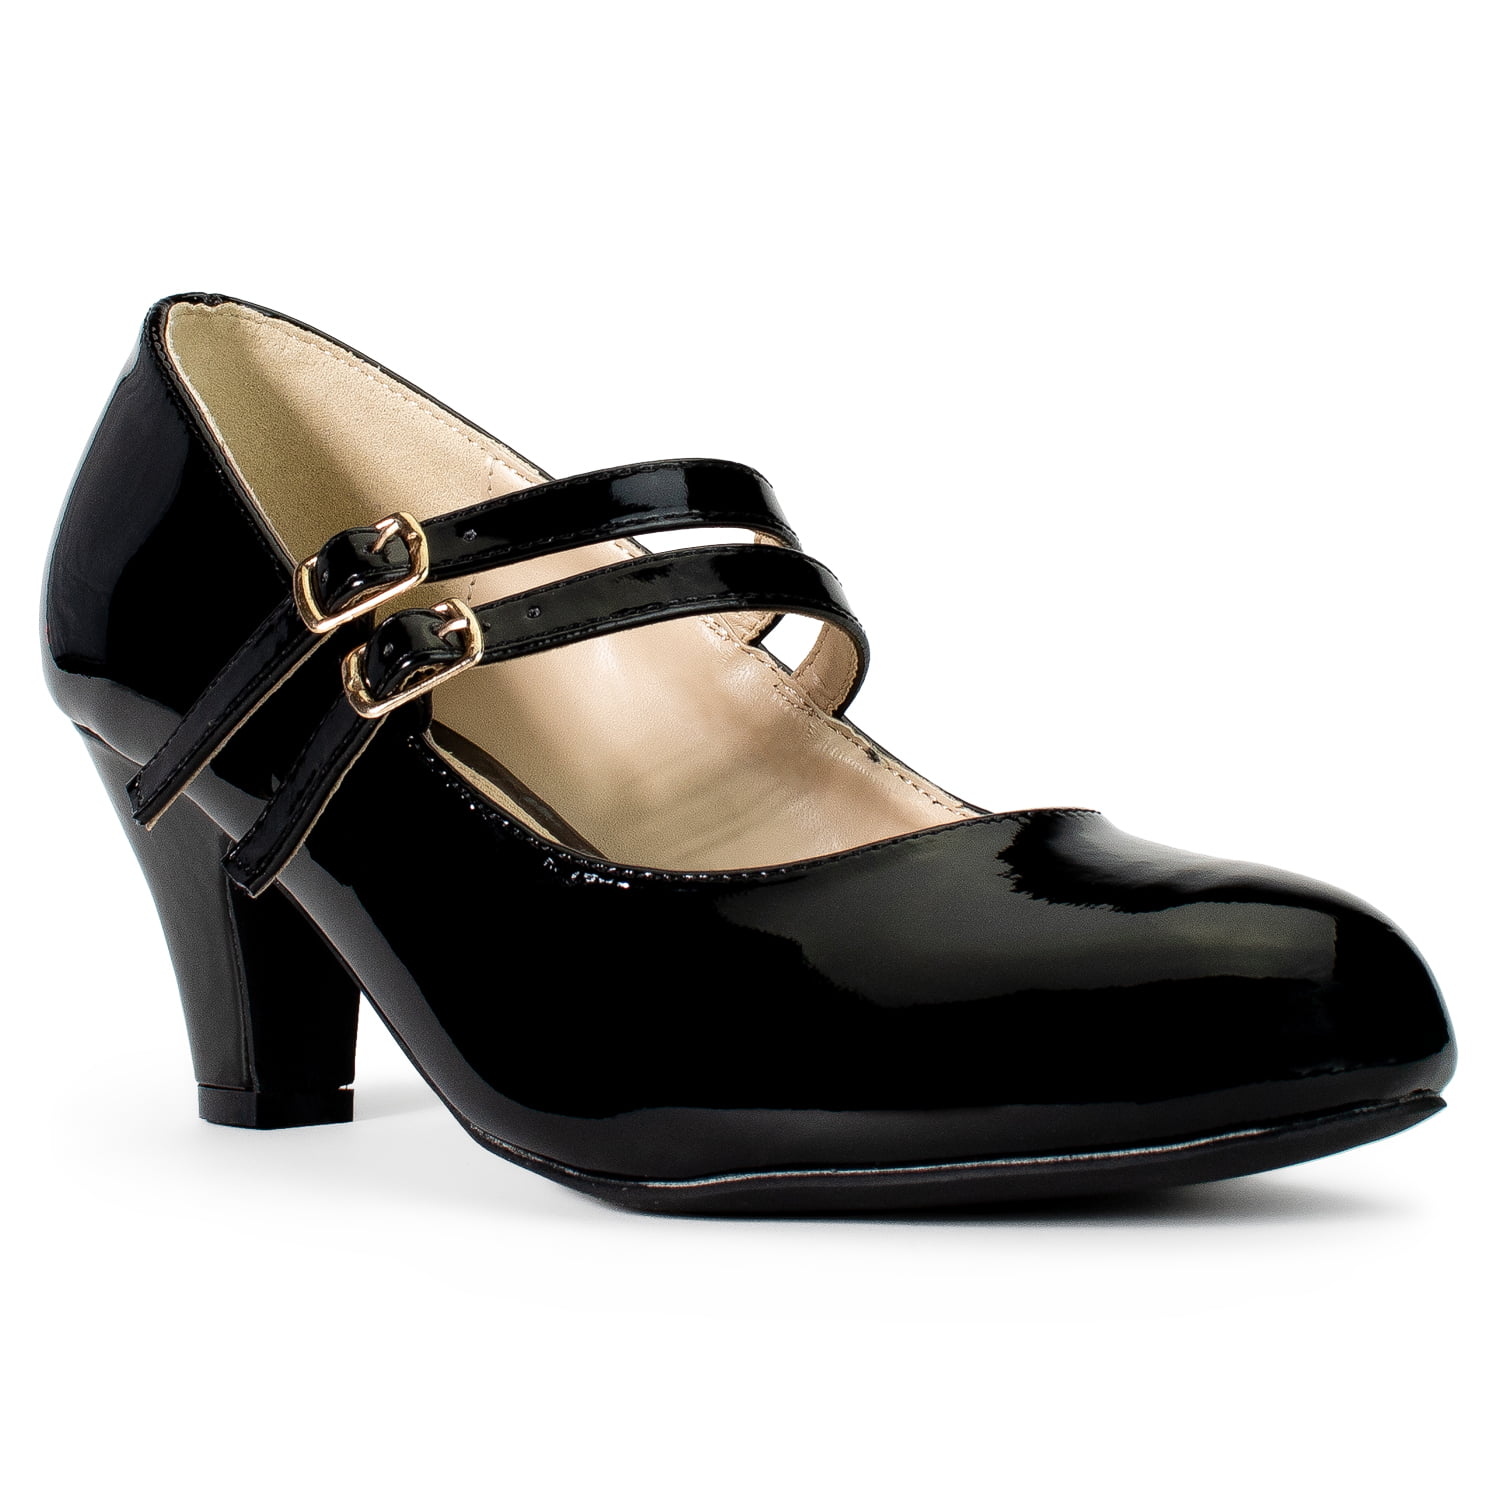 wide width mary jane heels